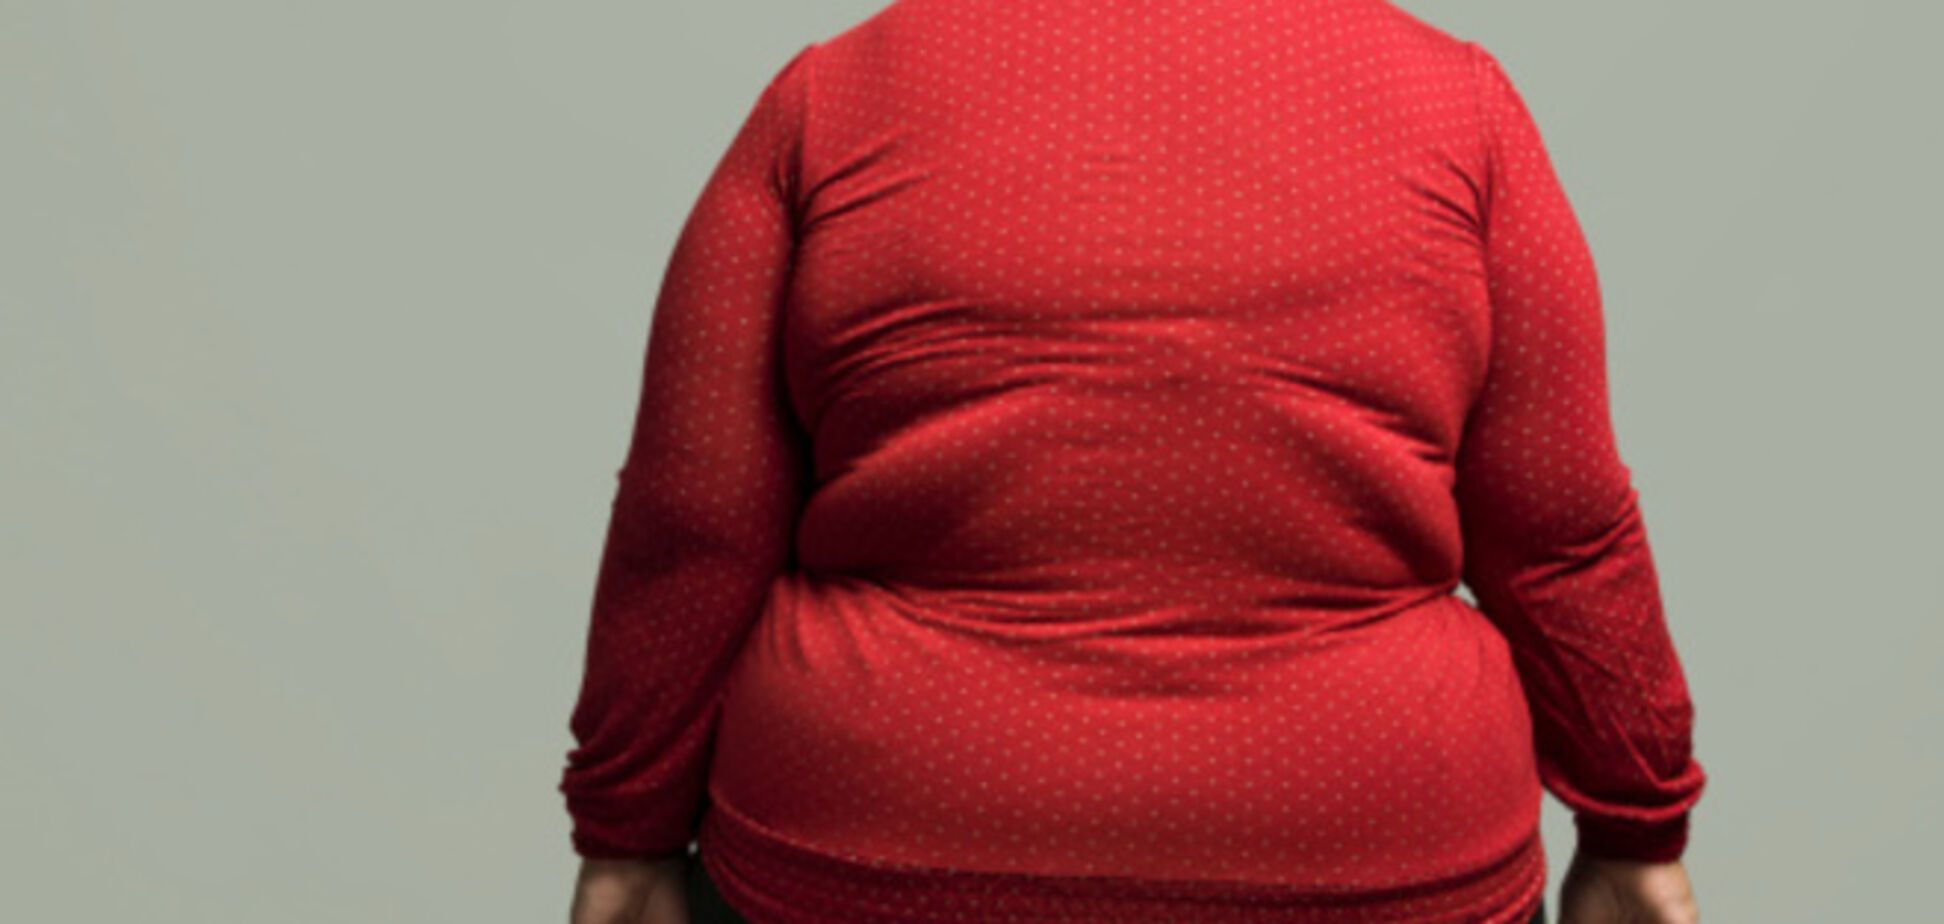 Через 15 лет ожирение станет вселенской проблемой